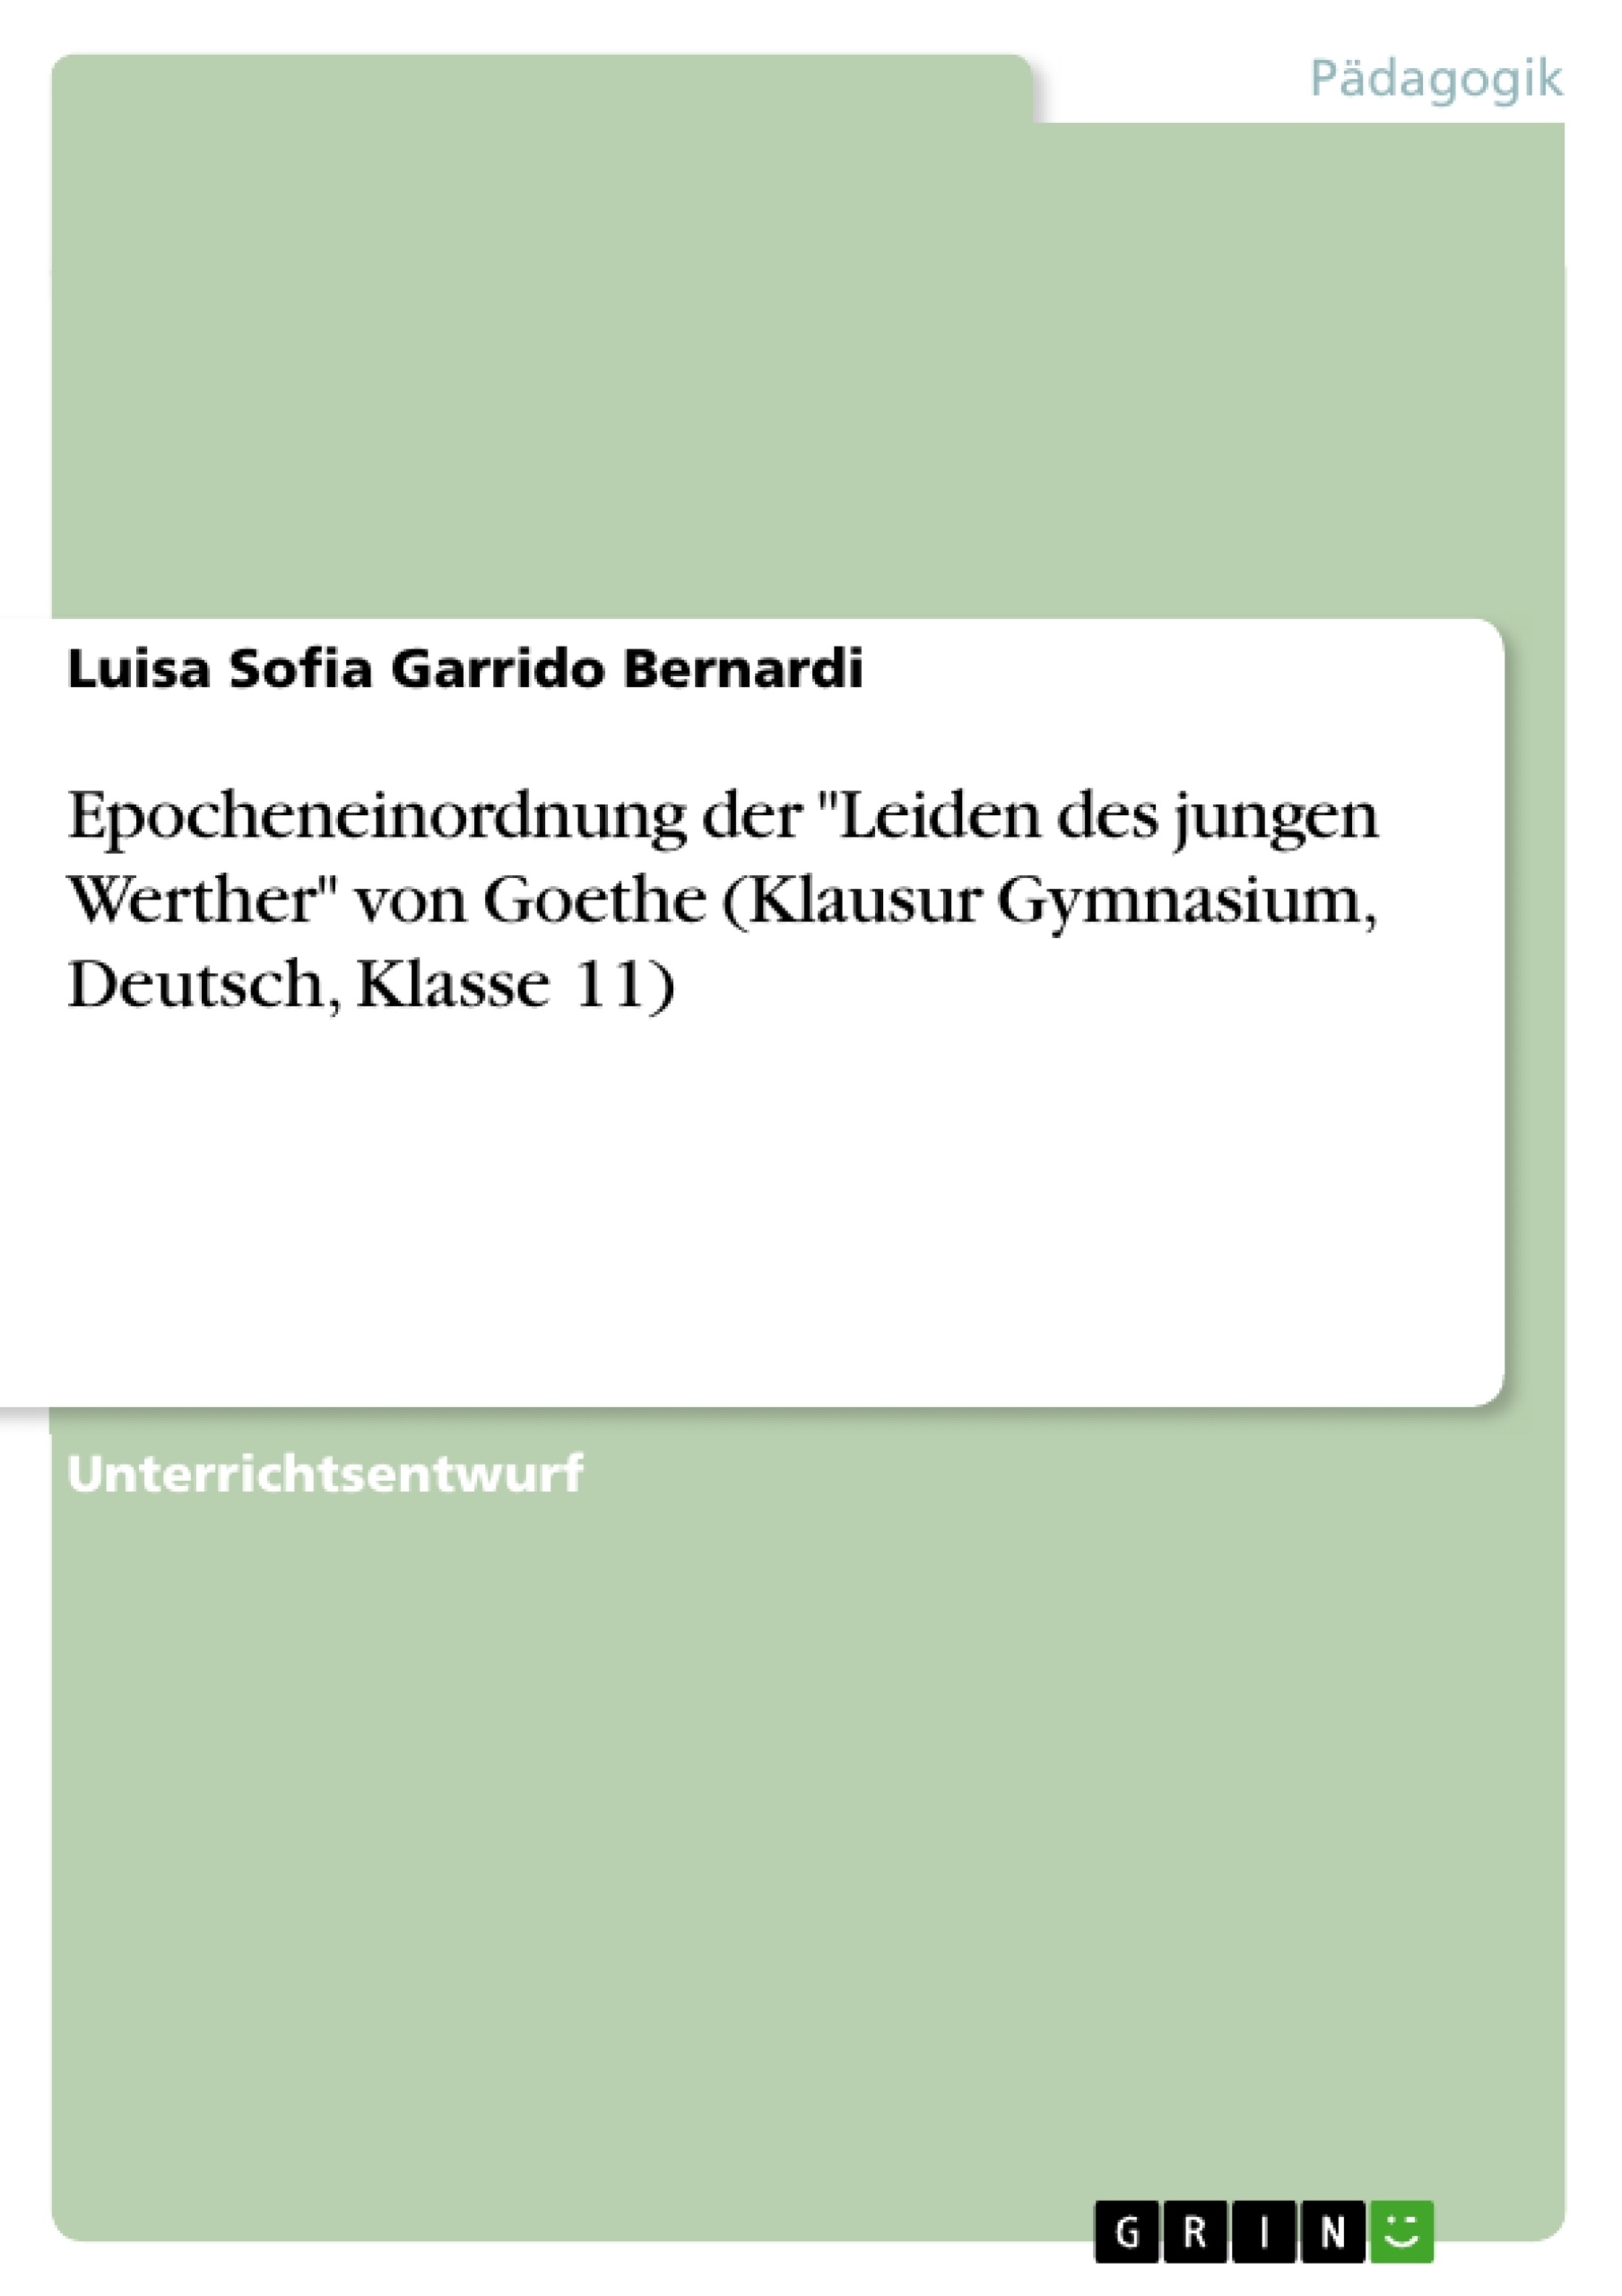 Titre: Epocheneinordnung der "Leiden des jungen Werther" von Goethe (Klausur Gymnasium, Deutsch, Klasse 11)